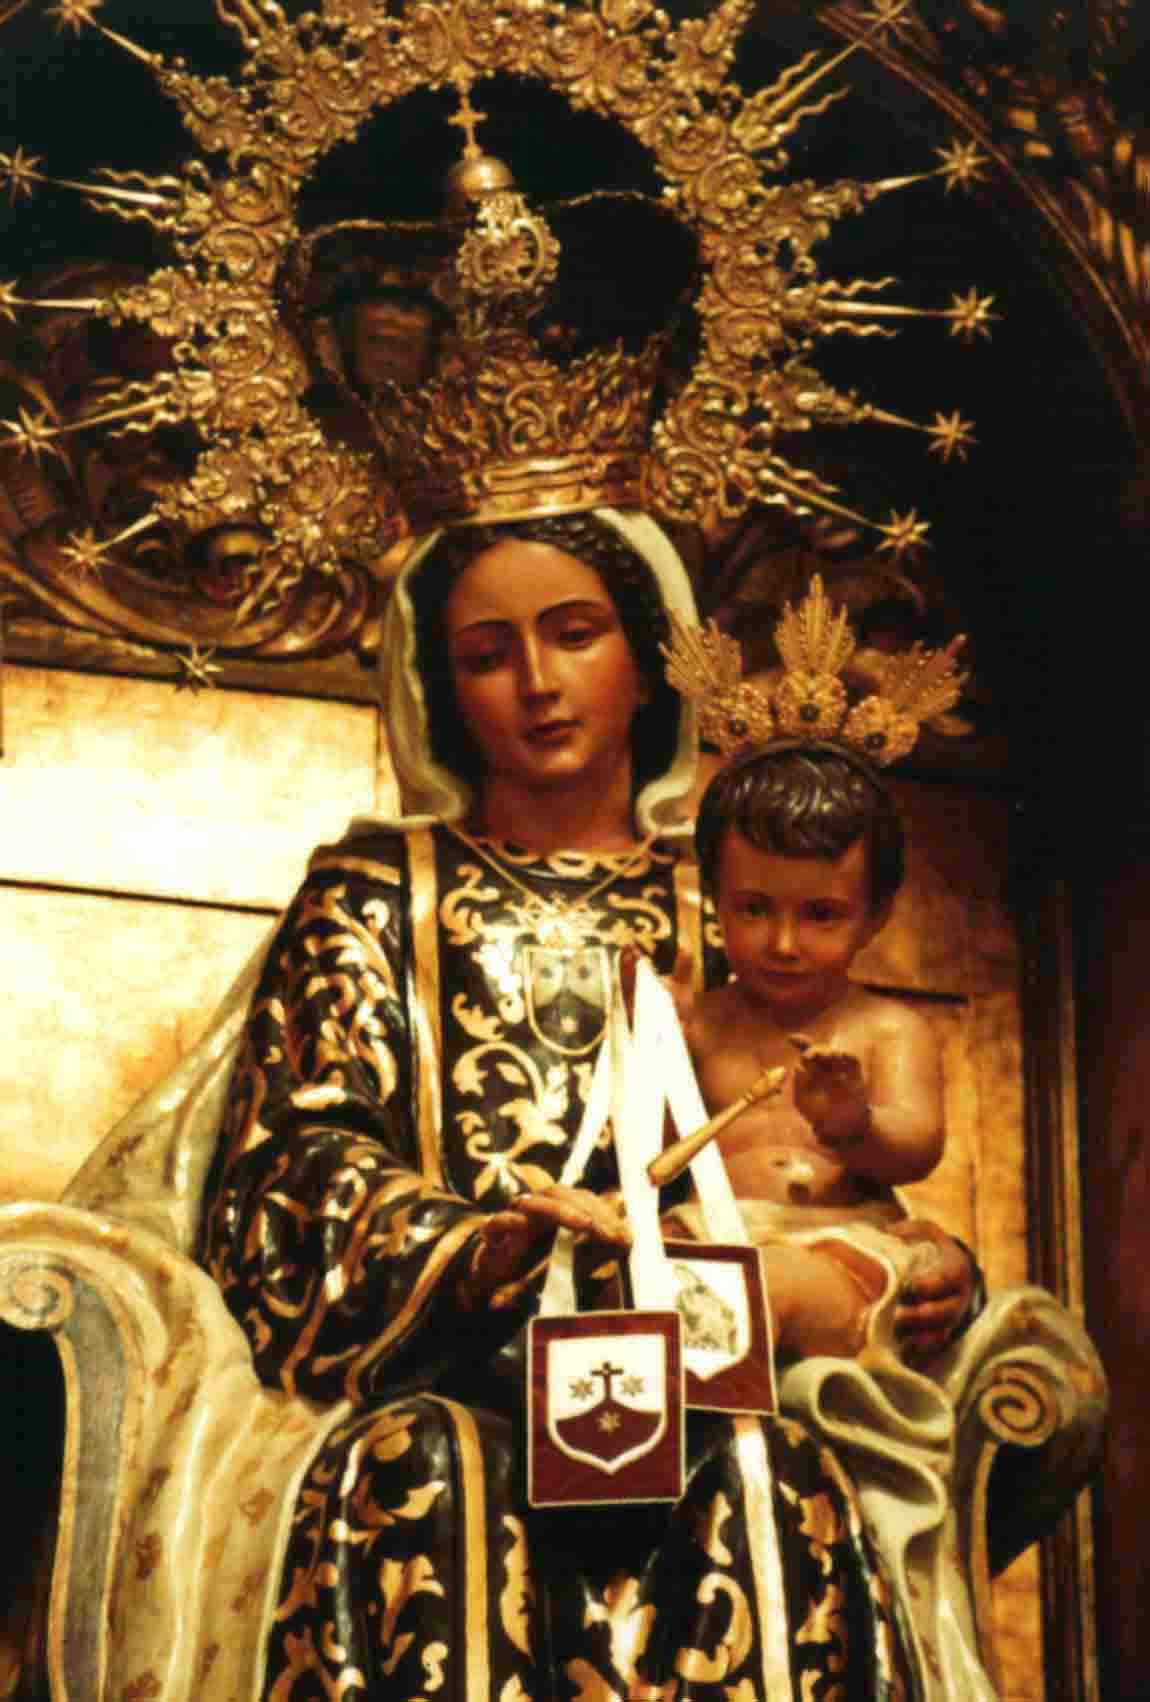 Imagen situada en el altar de la iglesia de nuestro convento.